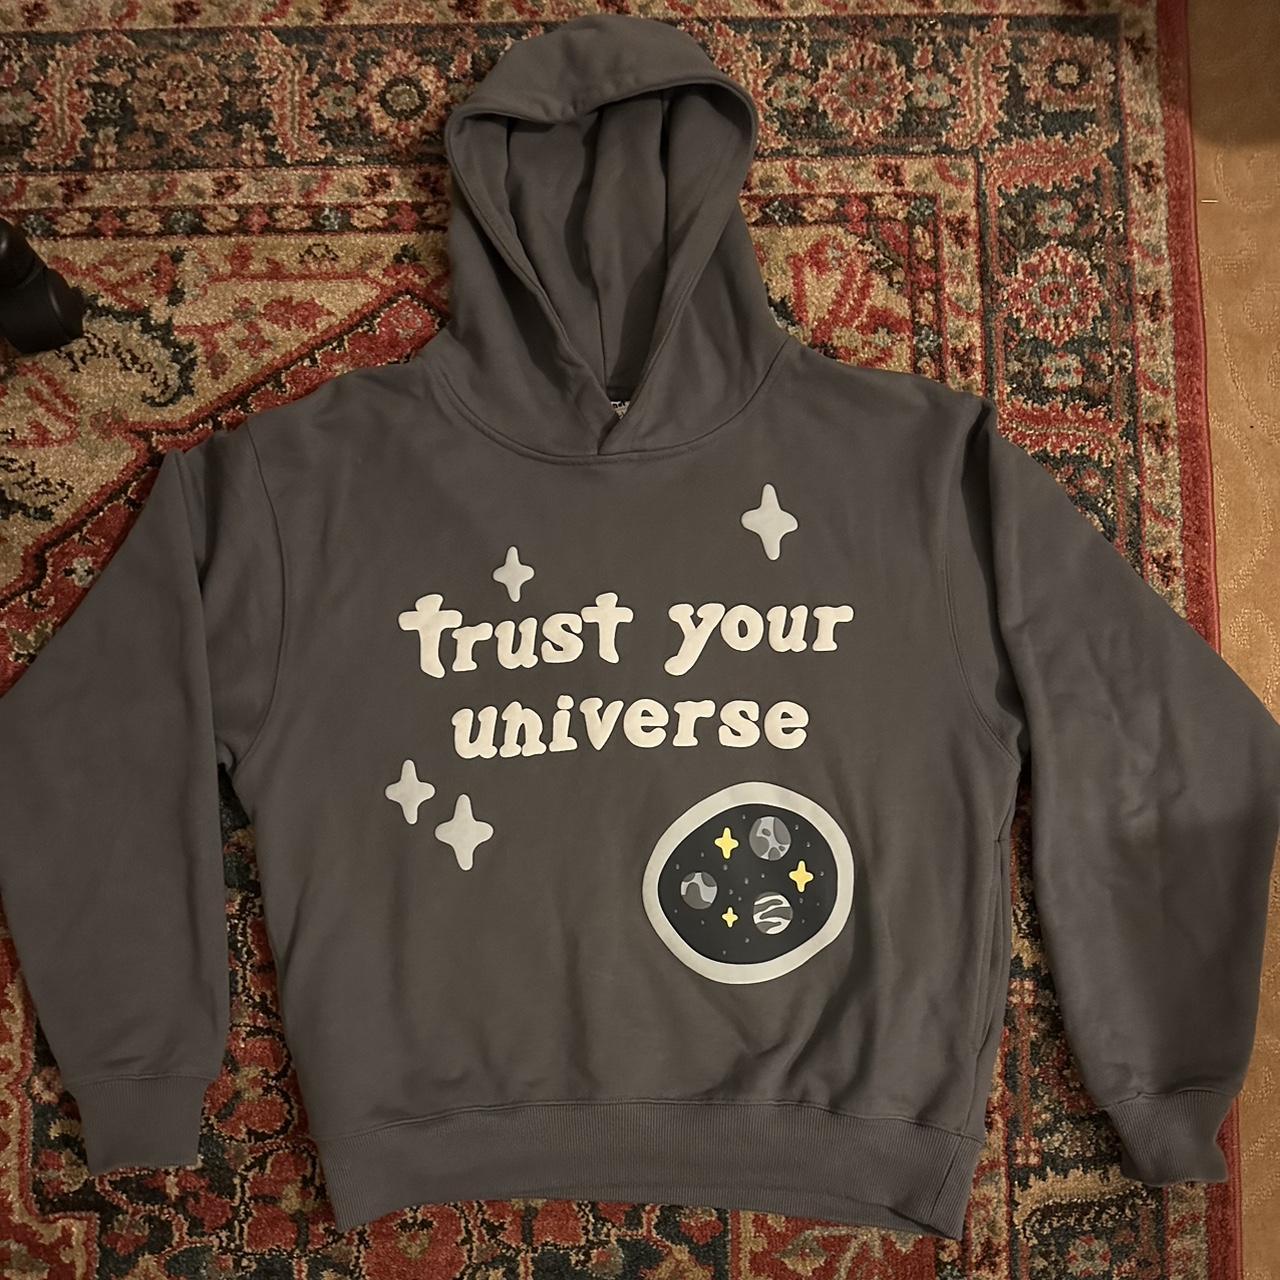 BROKEN PLANET trust your universe hoodie One of my... - Depop